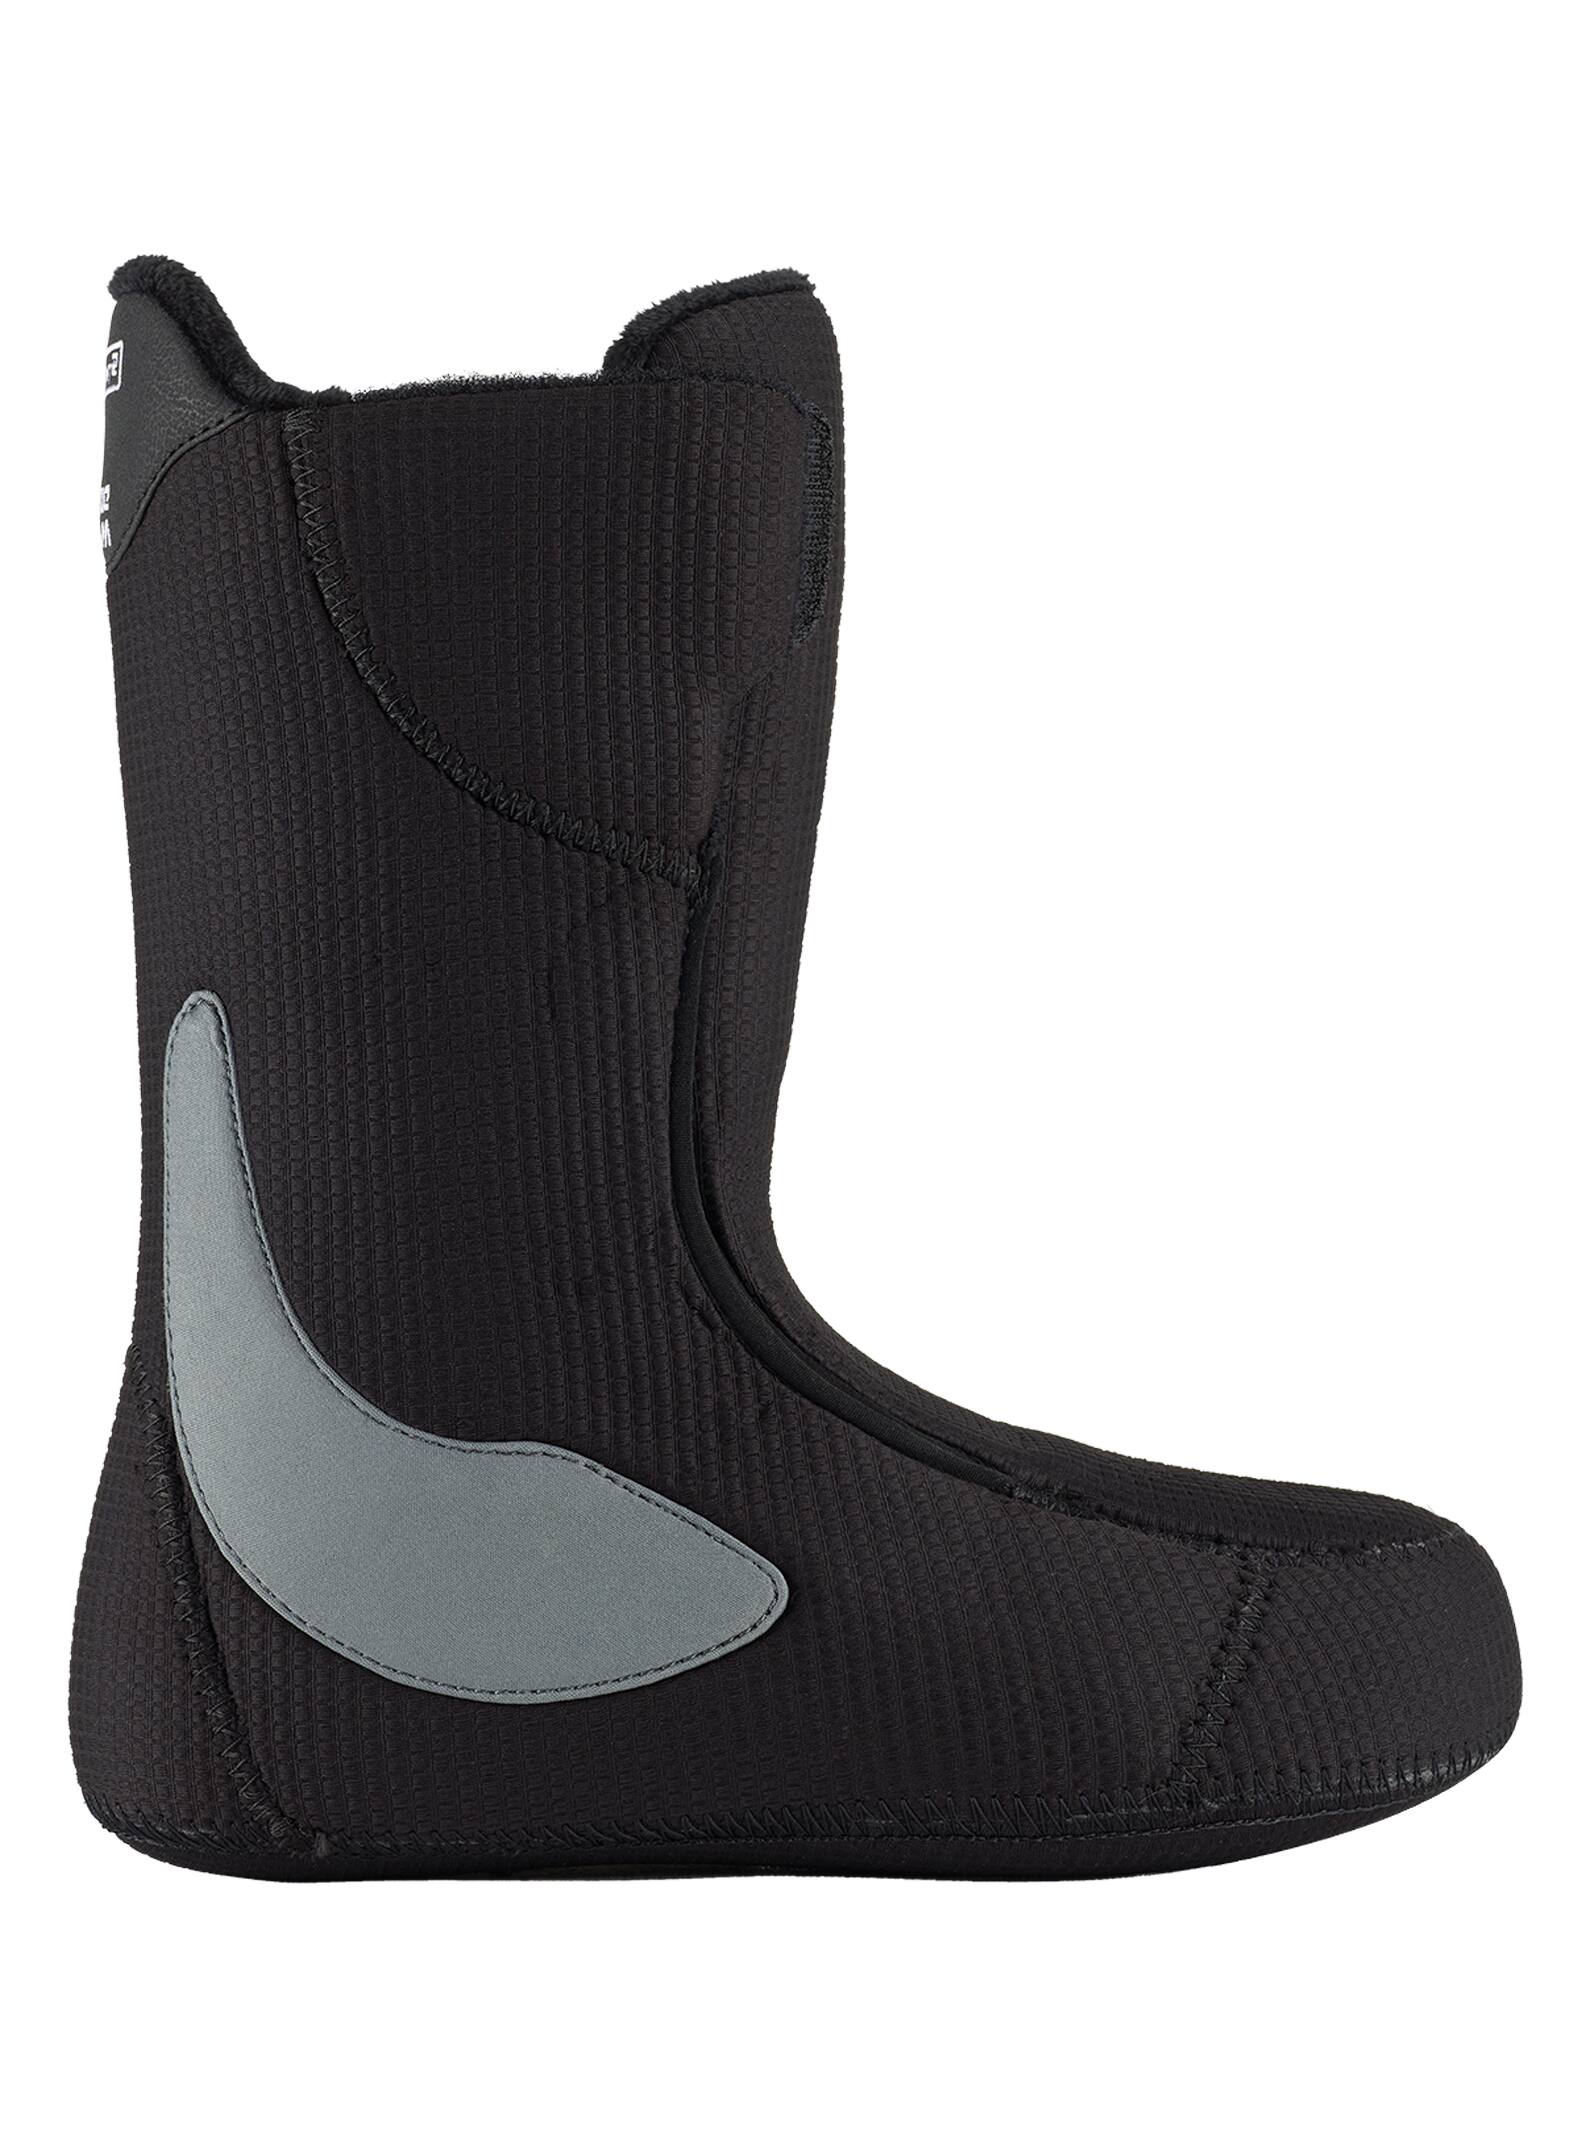 Burton Ruler Boa Snowboard Boots 2021 schwarz/rot 